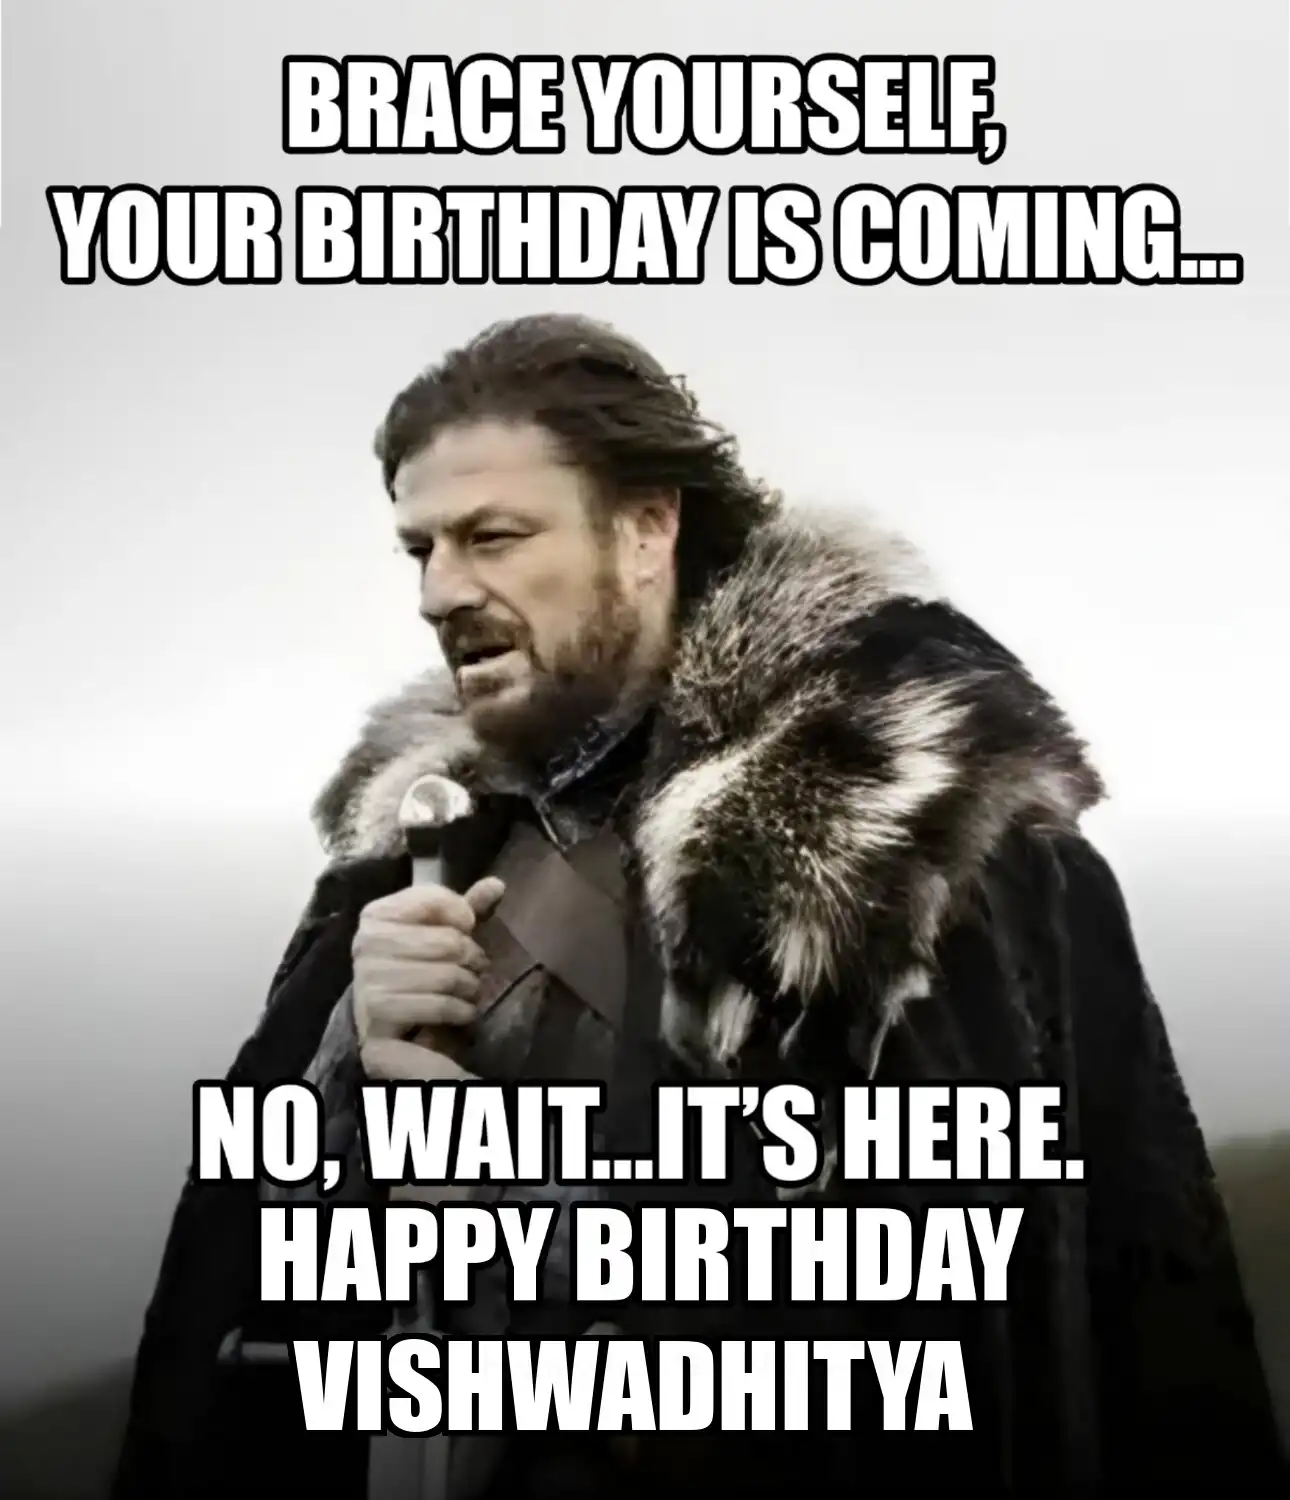 Happy Birthday Vishwadhitya Brace Yourself Your Birthday Is Coming Meme